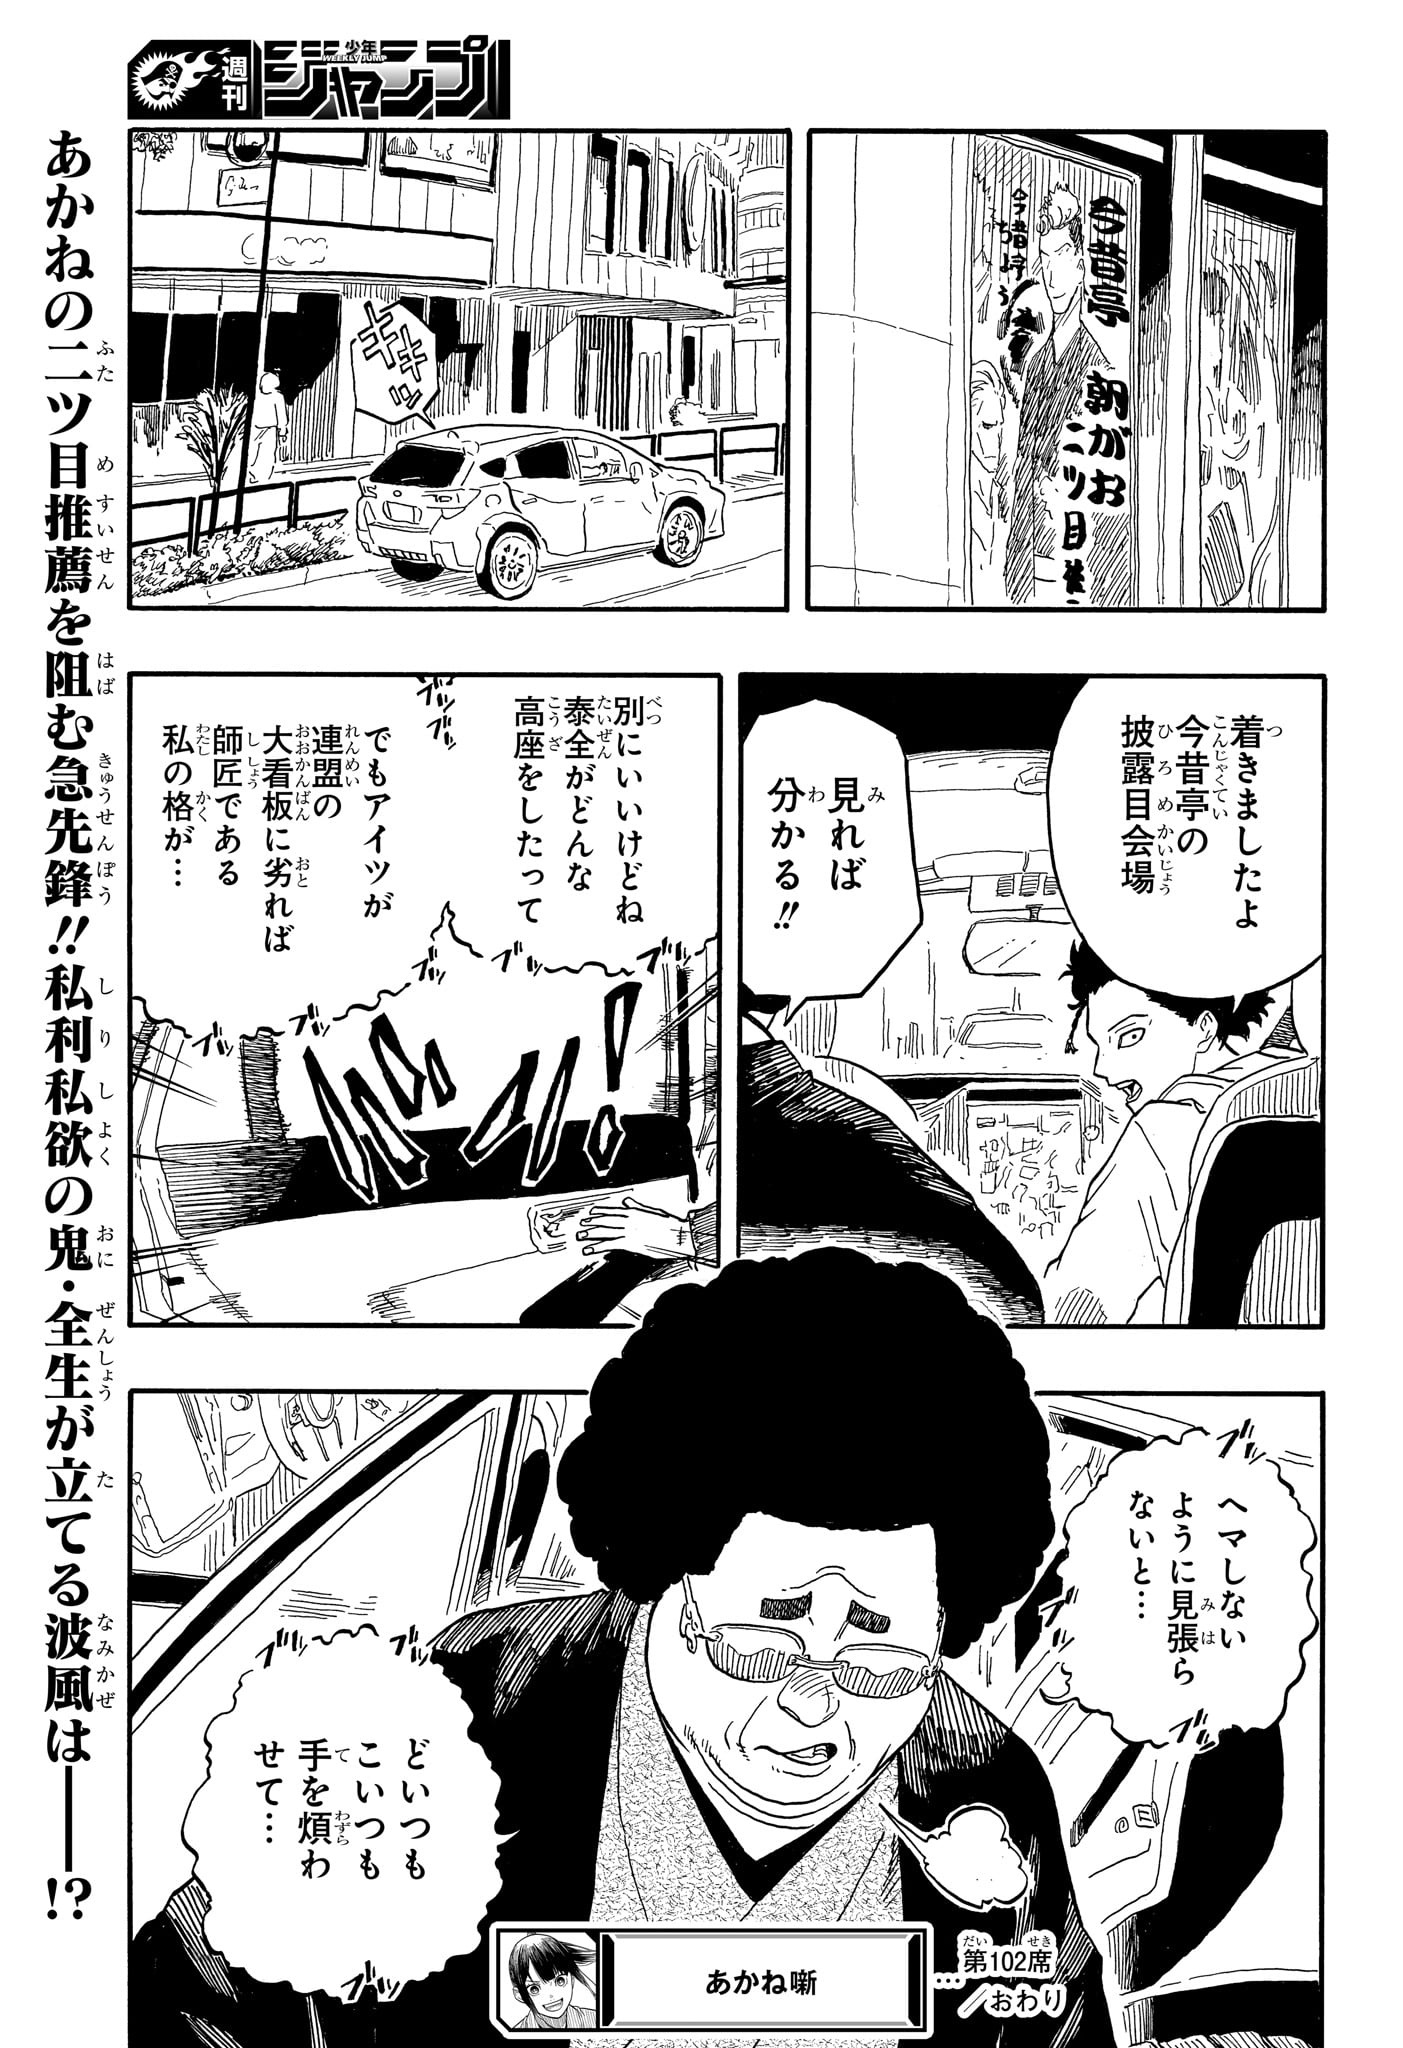 Akane-Banashi - Chapter 102 - Page 19